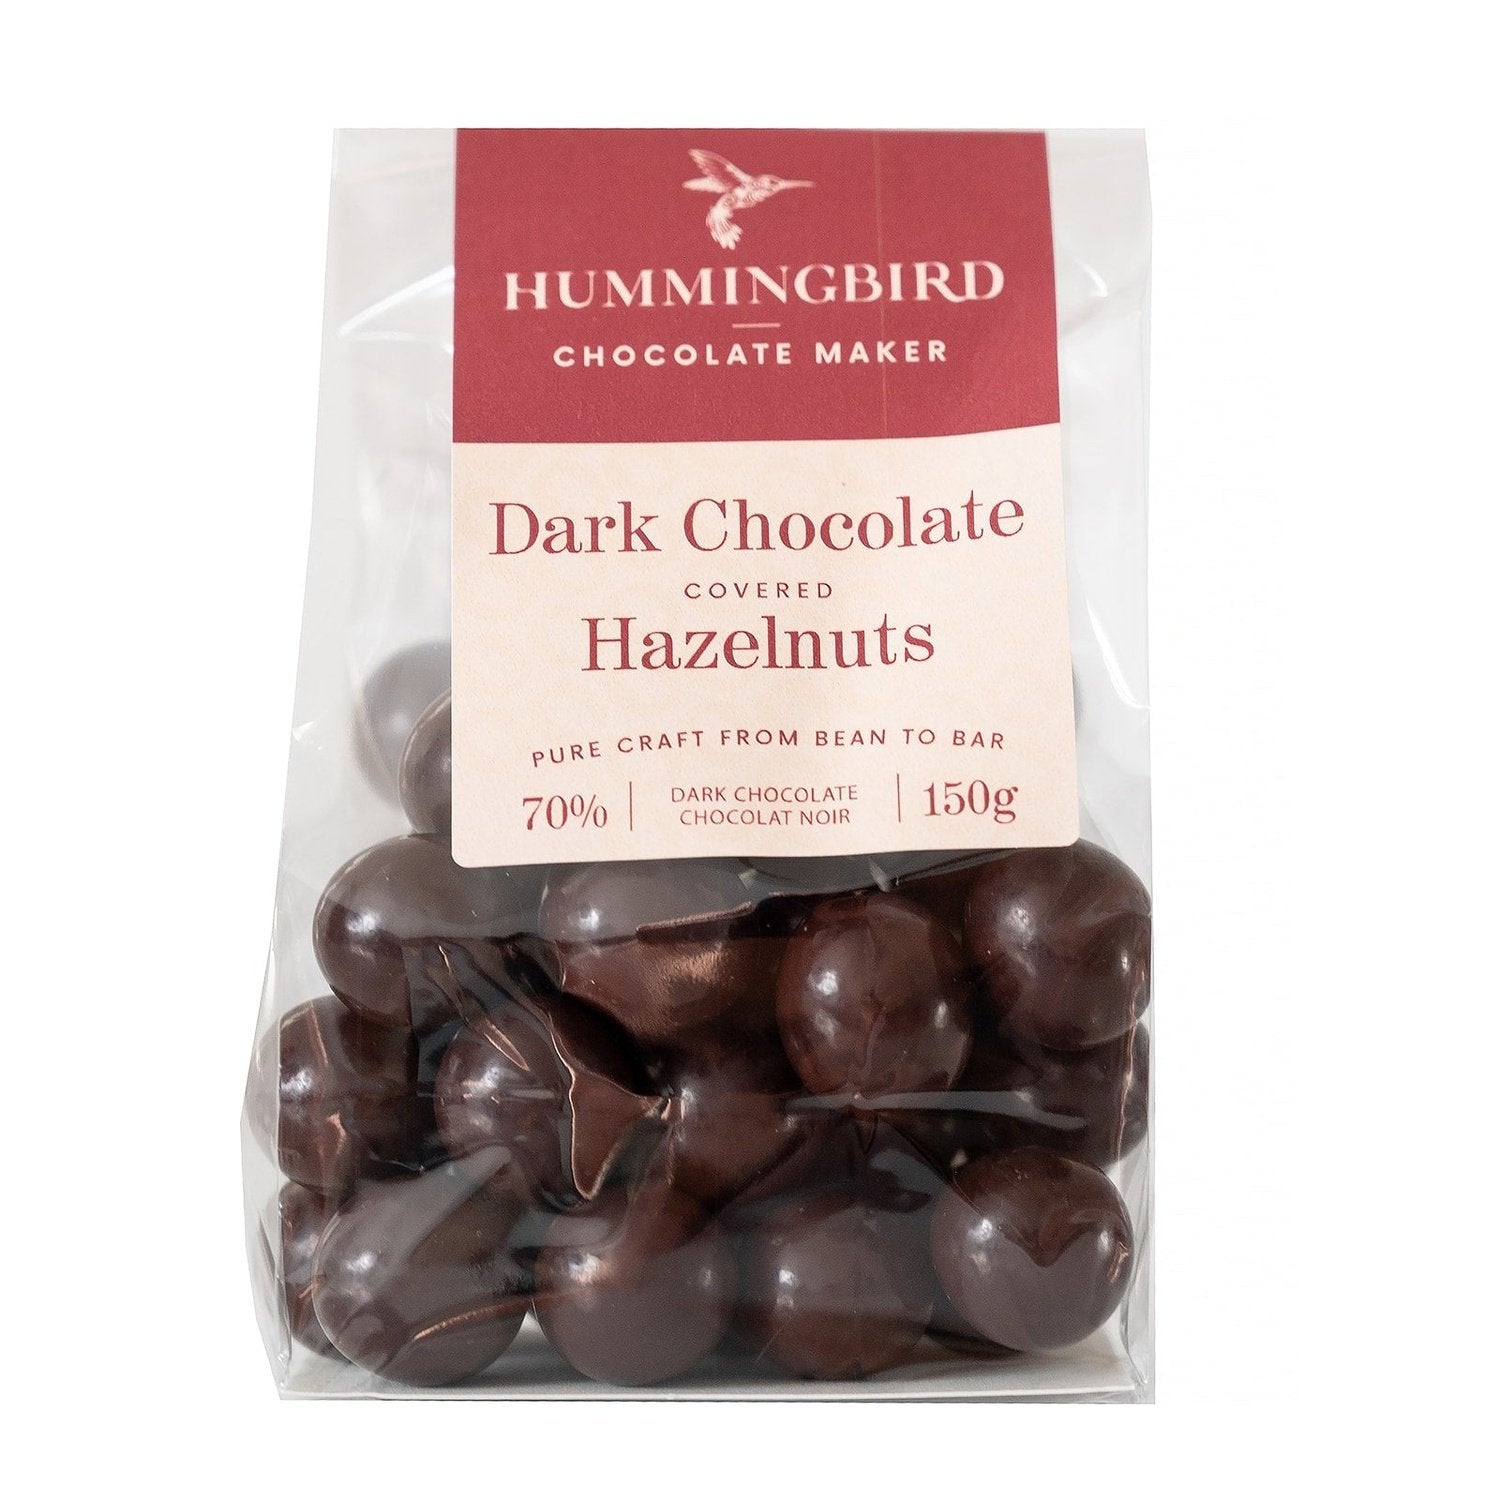 Hummingbird Chocolate Maker Dark Chocolate Covered Hazelnuts